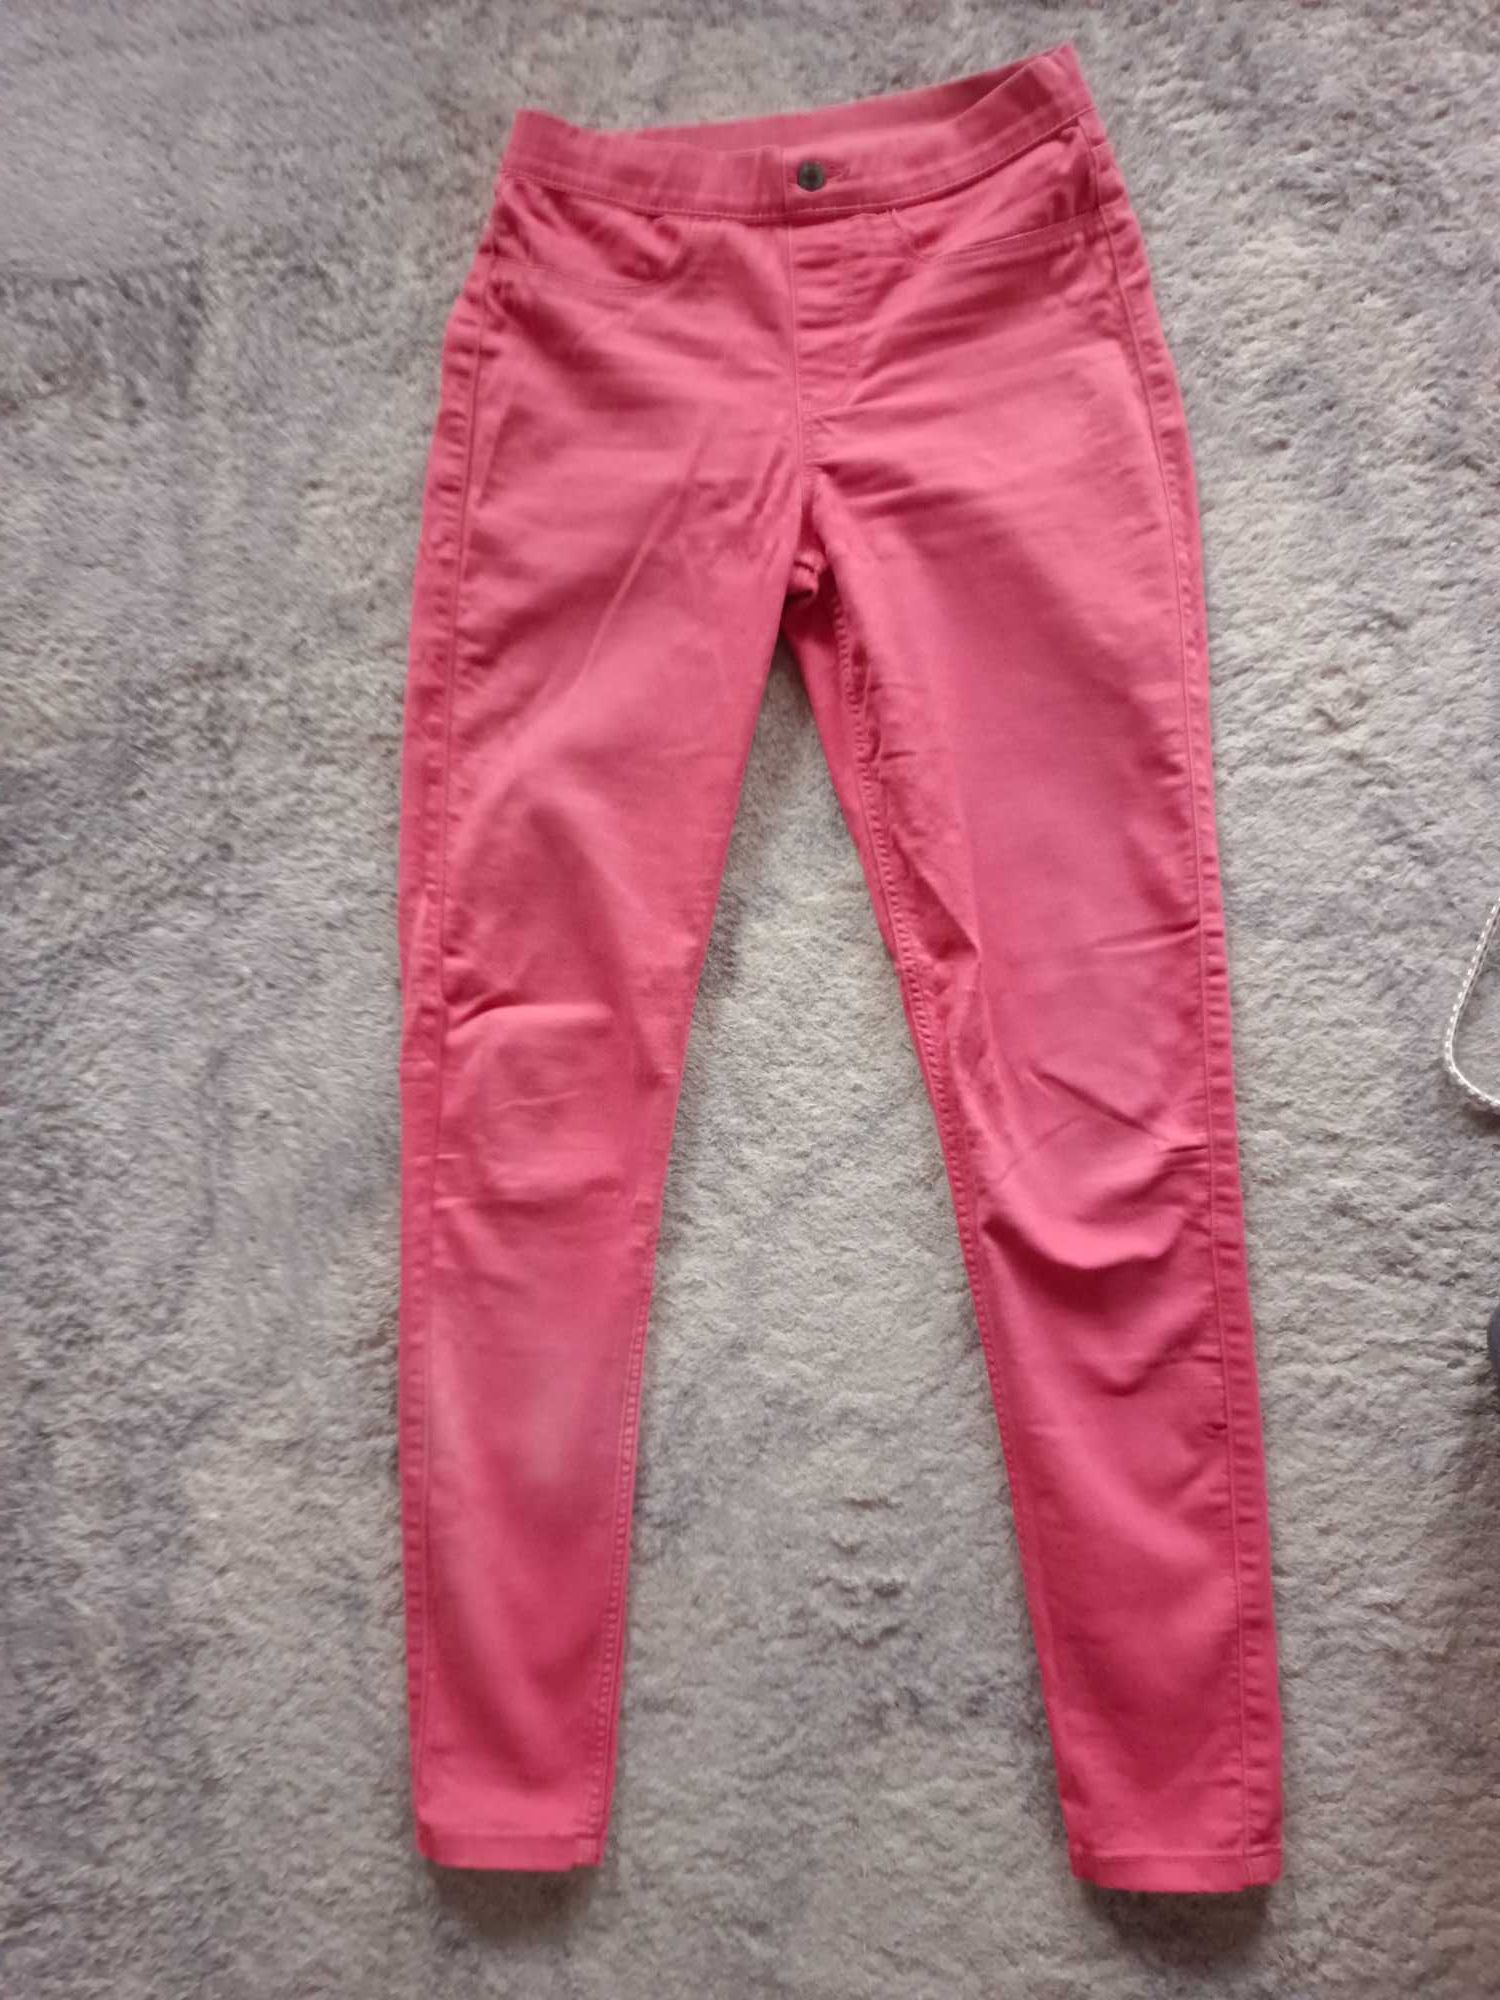 Jegginsy różowe Esmara 36,s miękki jeans, dopasowują się do figury